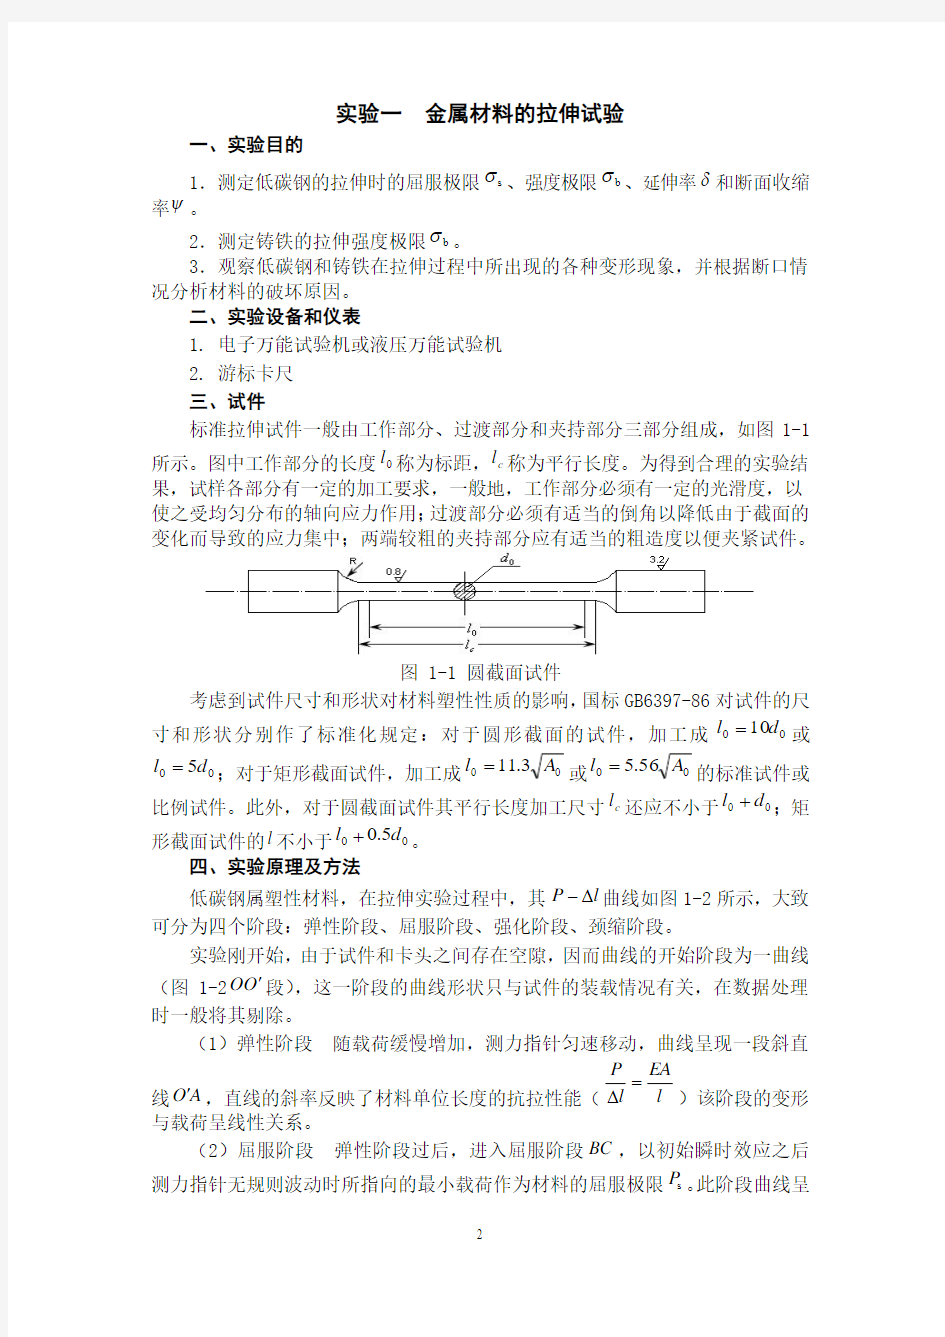 材料力学实验指导书(2014.09.03).